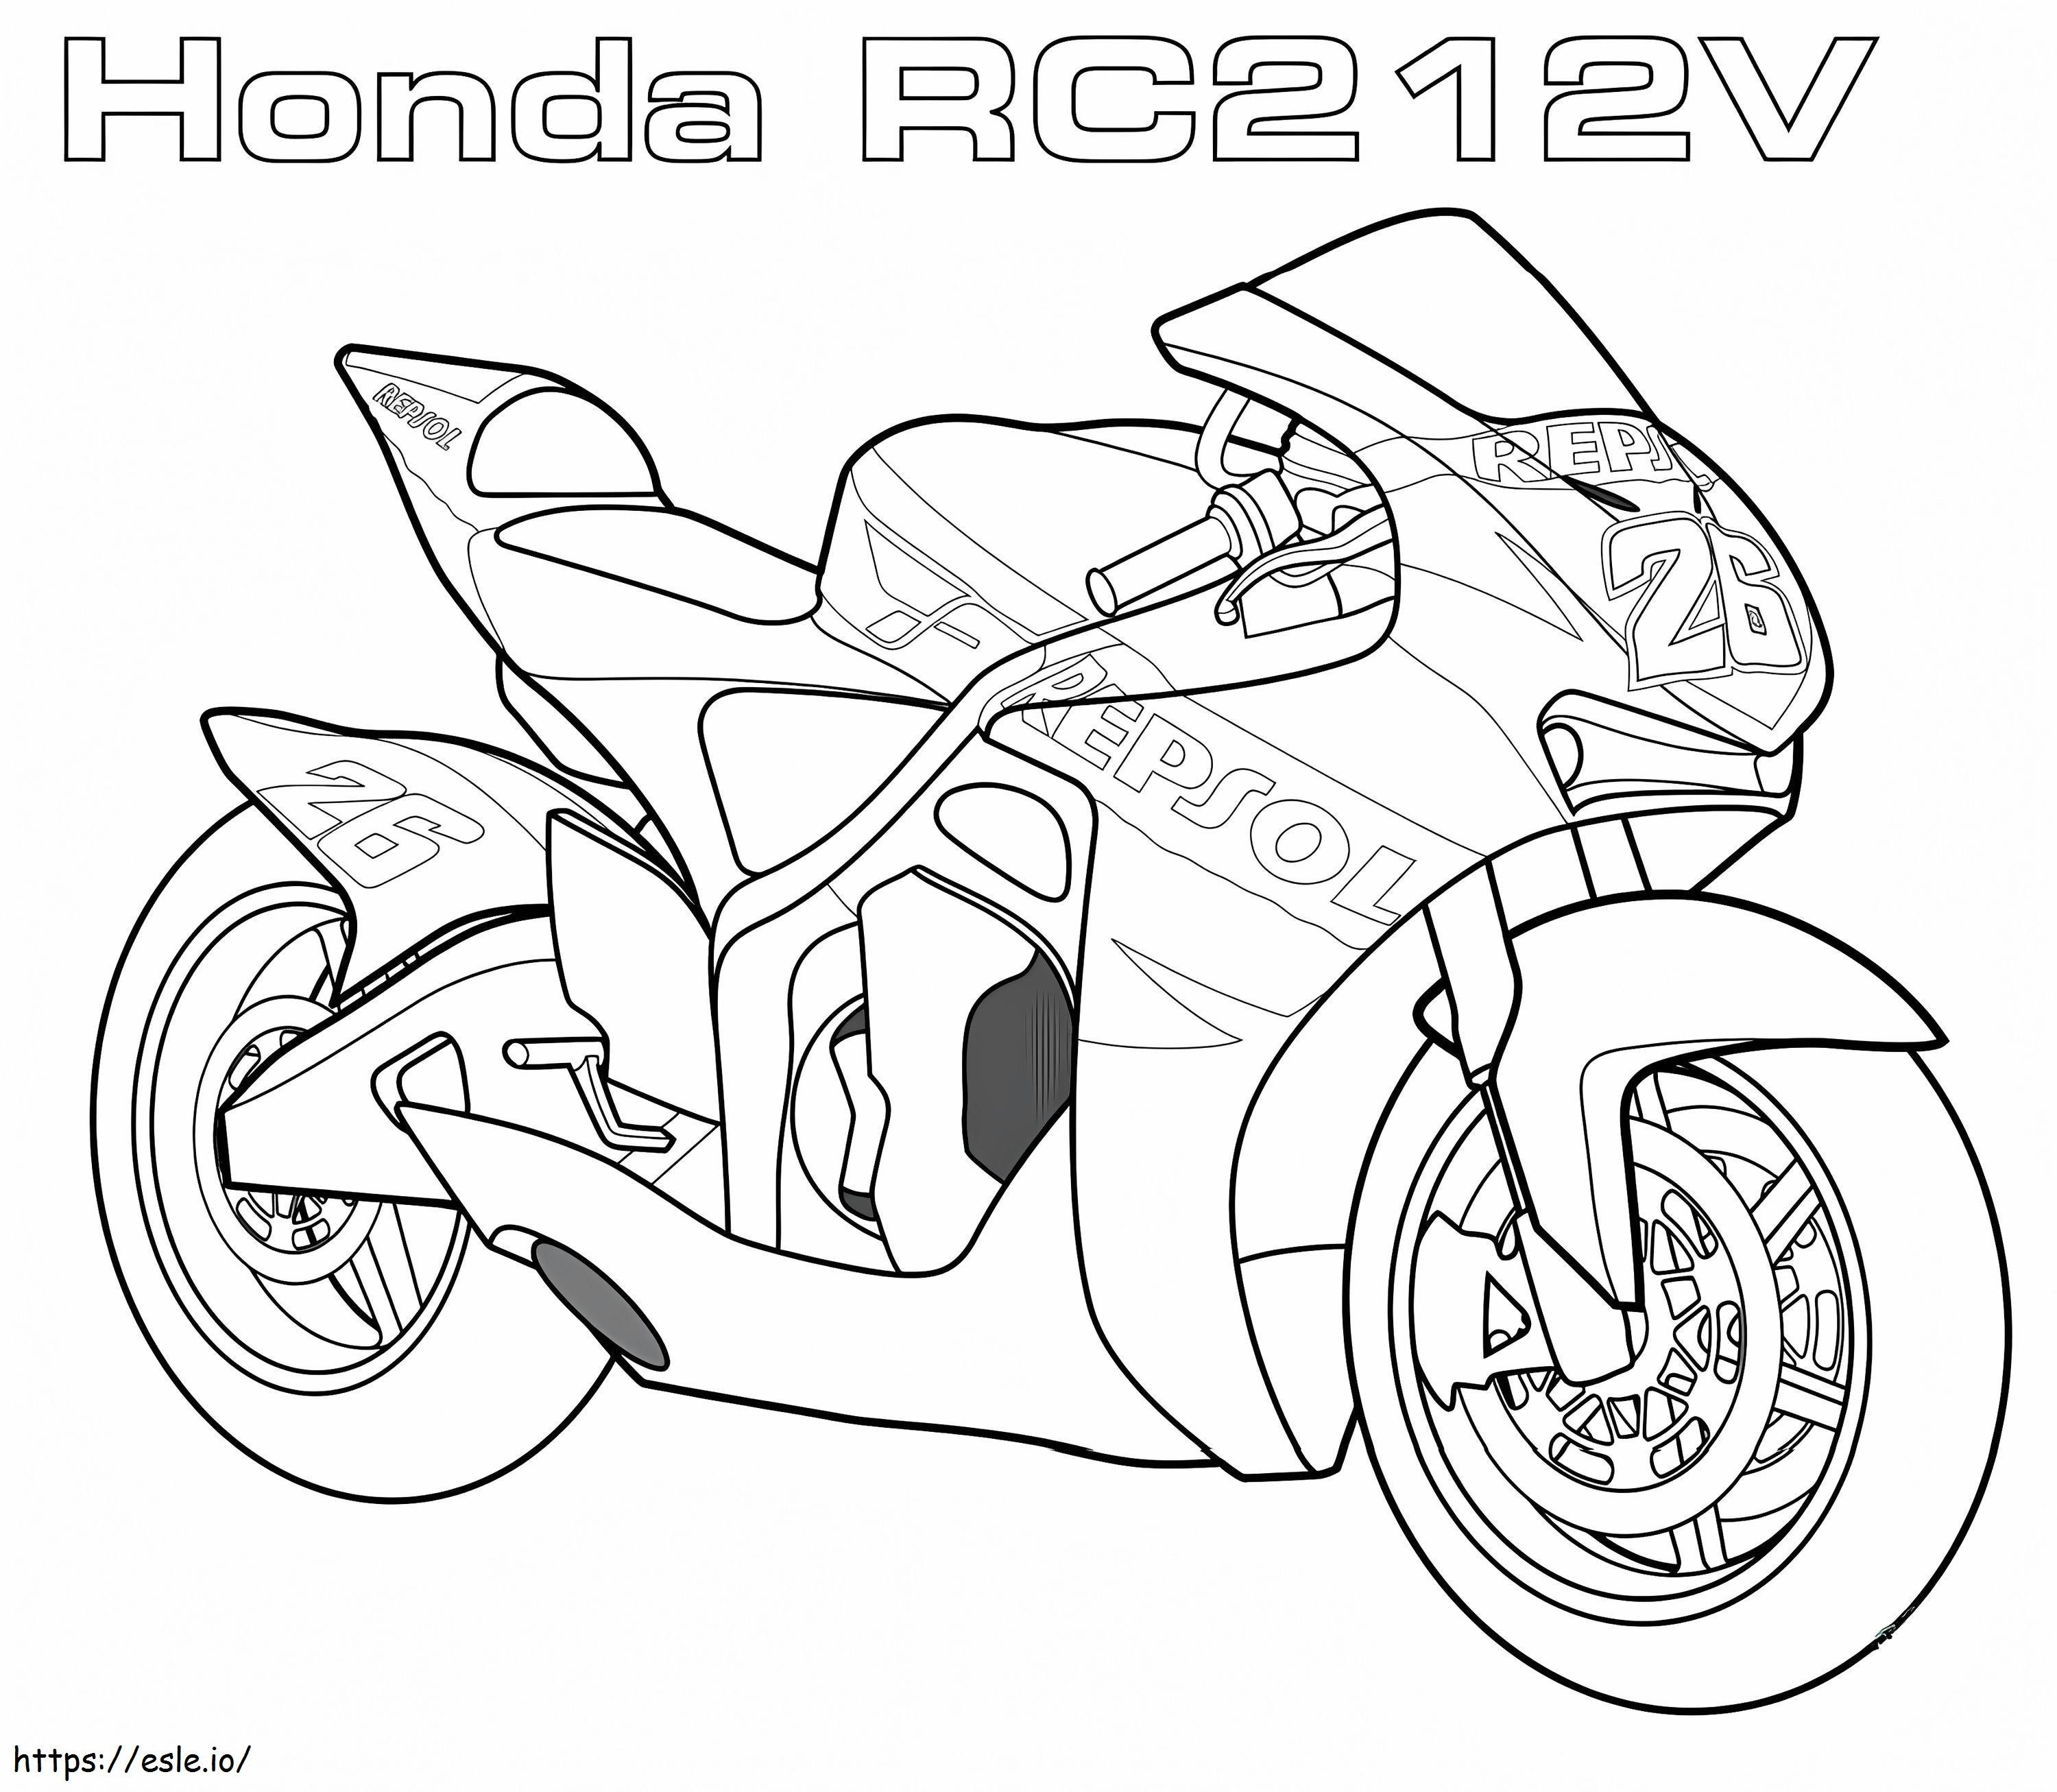 1560590239 Honda Rc2 V12 A4 coloring page